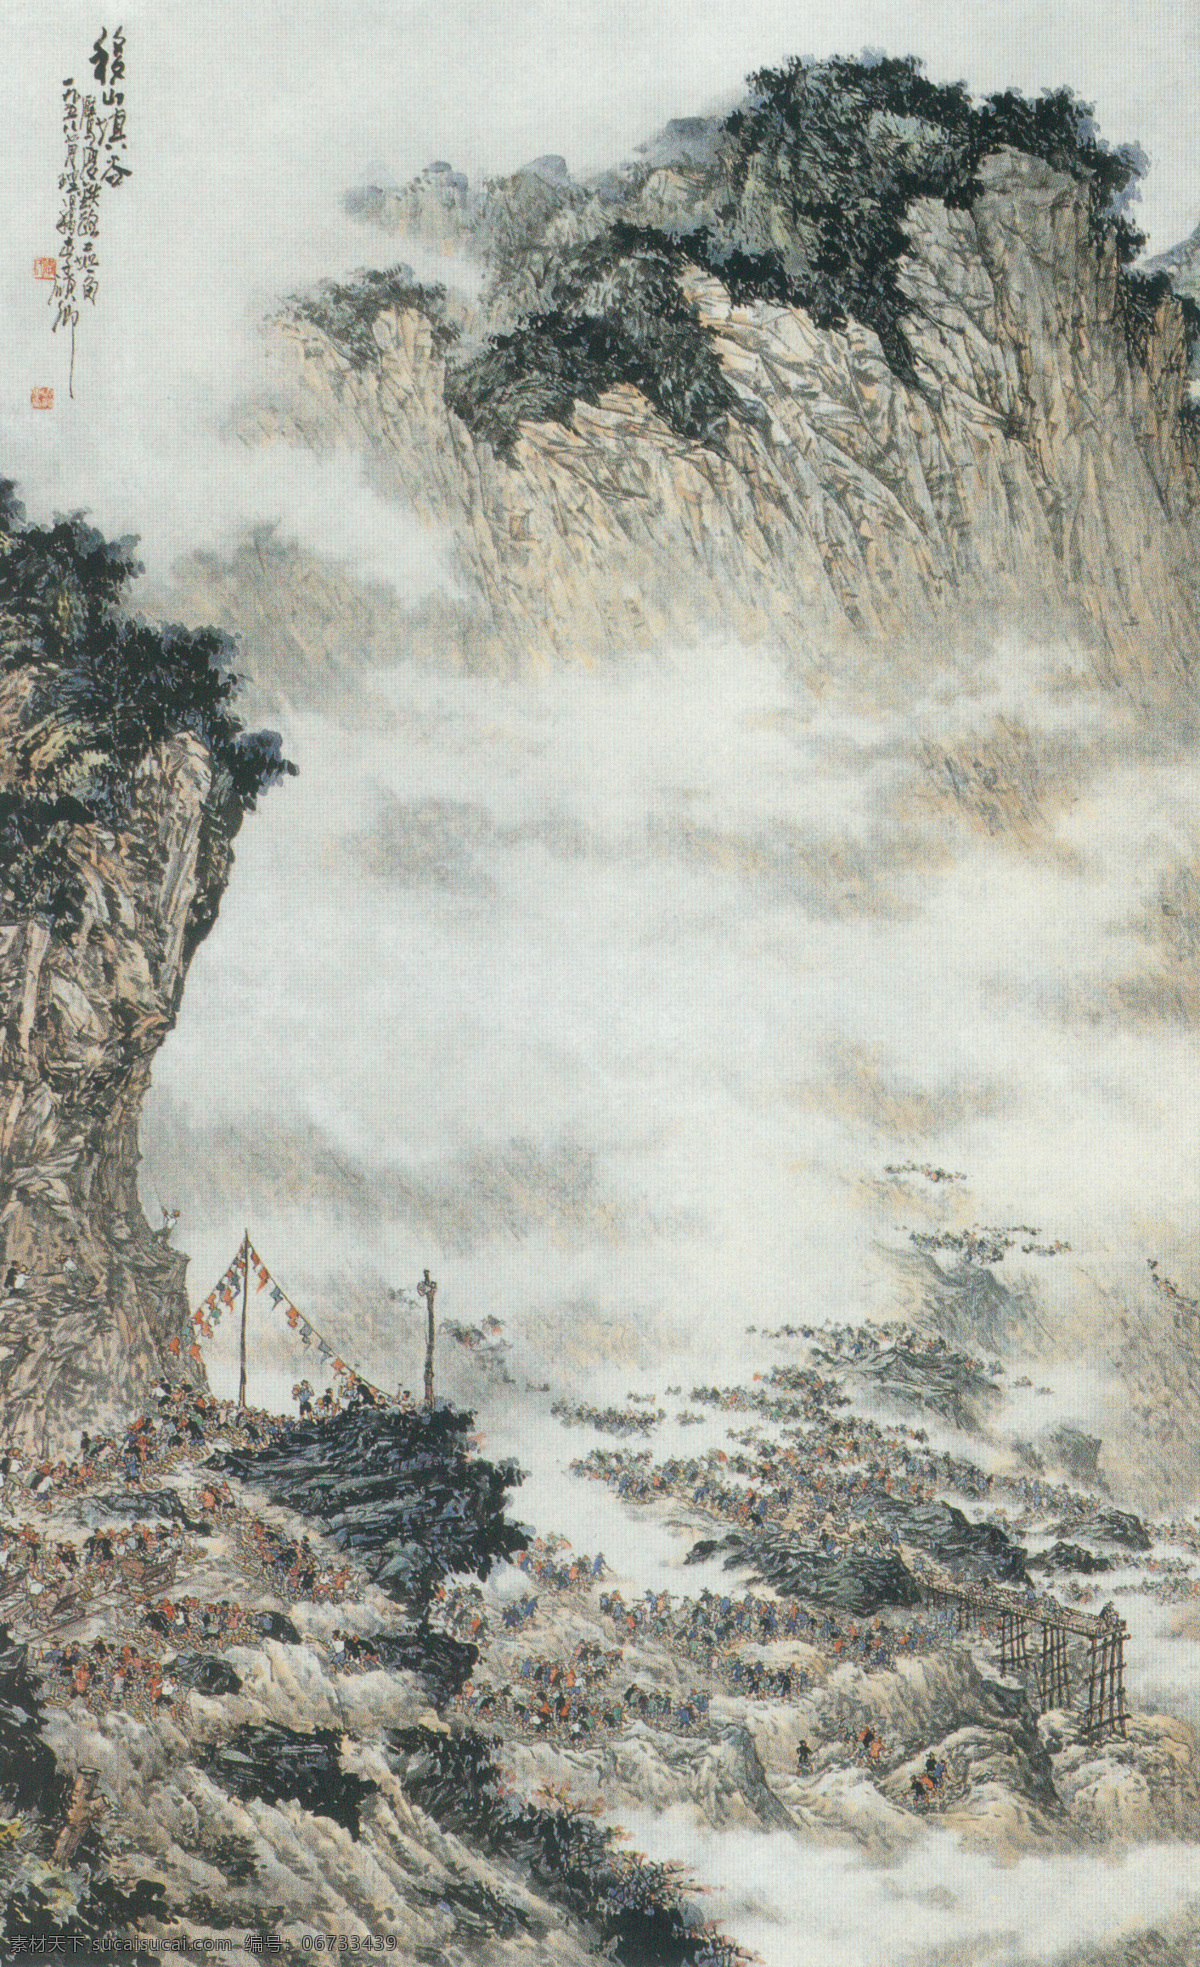 移 山镇 谷 图 传统 水墨 山林 移山镇谷 建设 中国 现代 山水 篇 文化艺术 绘画书法